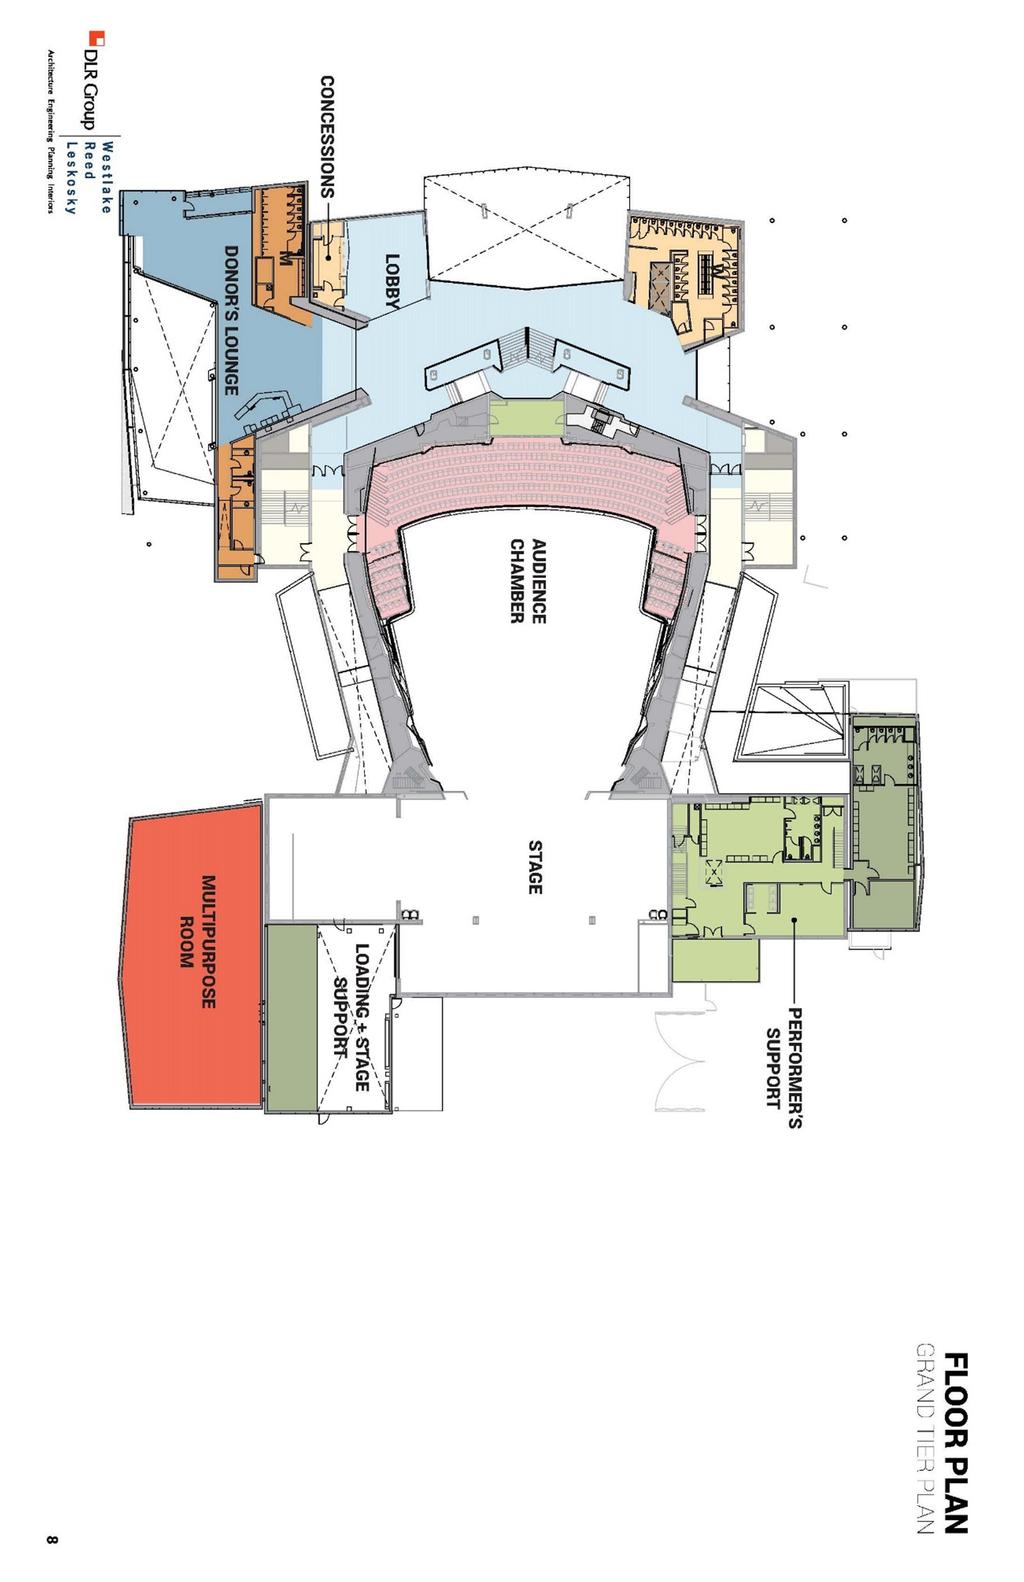 Figure 6 Theater Floor Plan